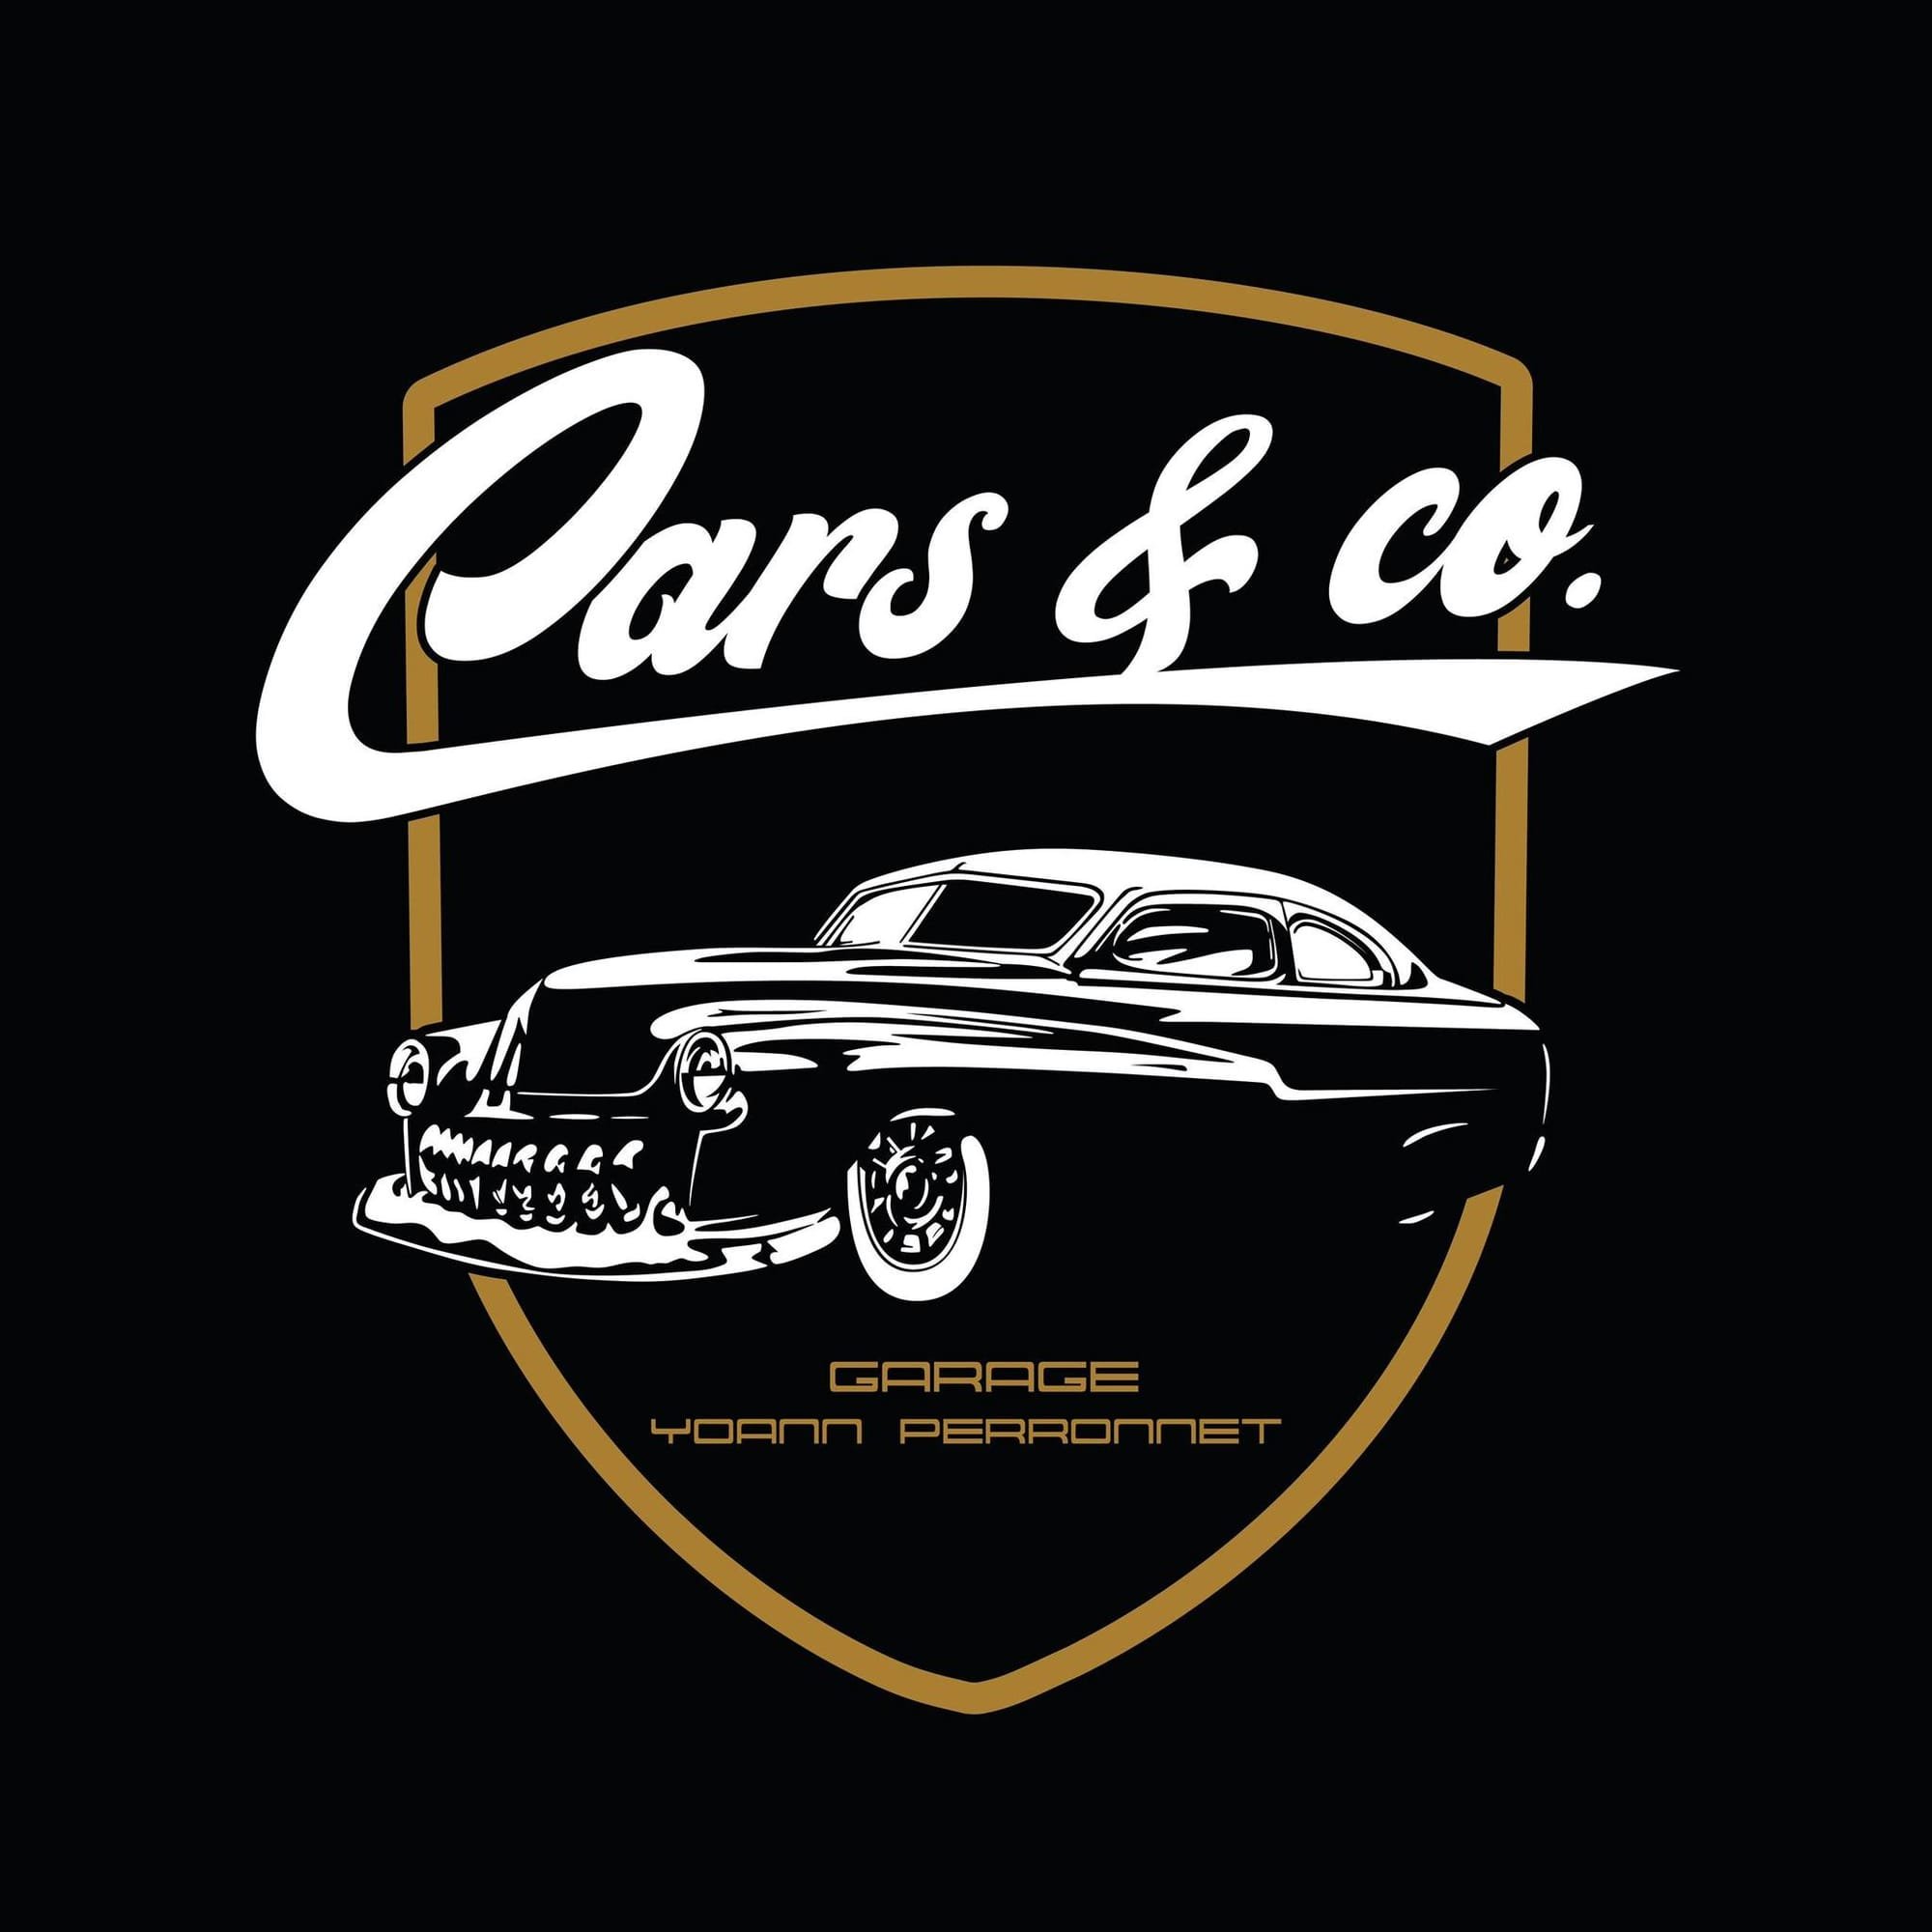 Cars & Co. Garage Avermes 03